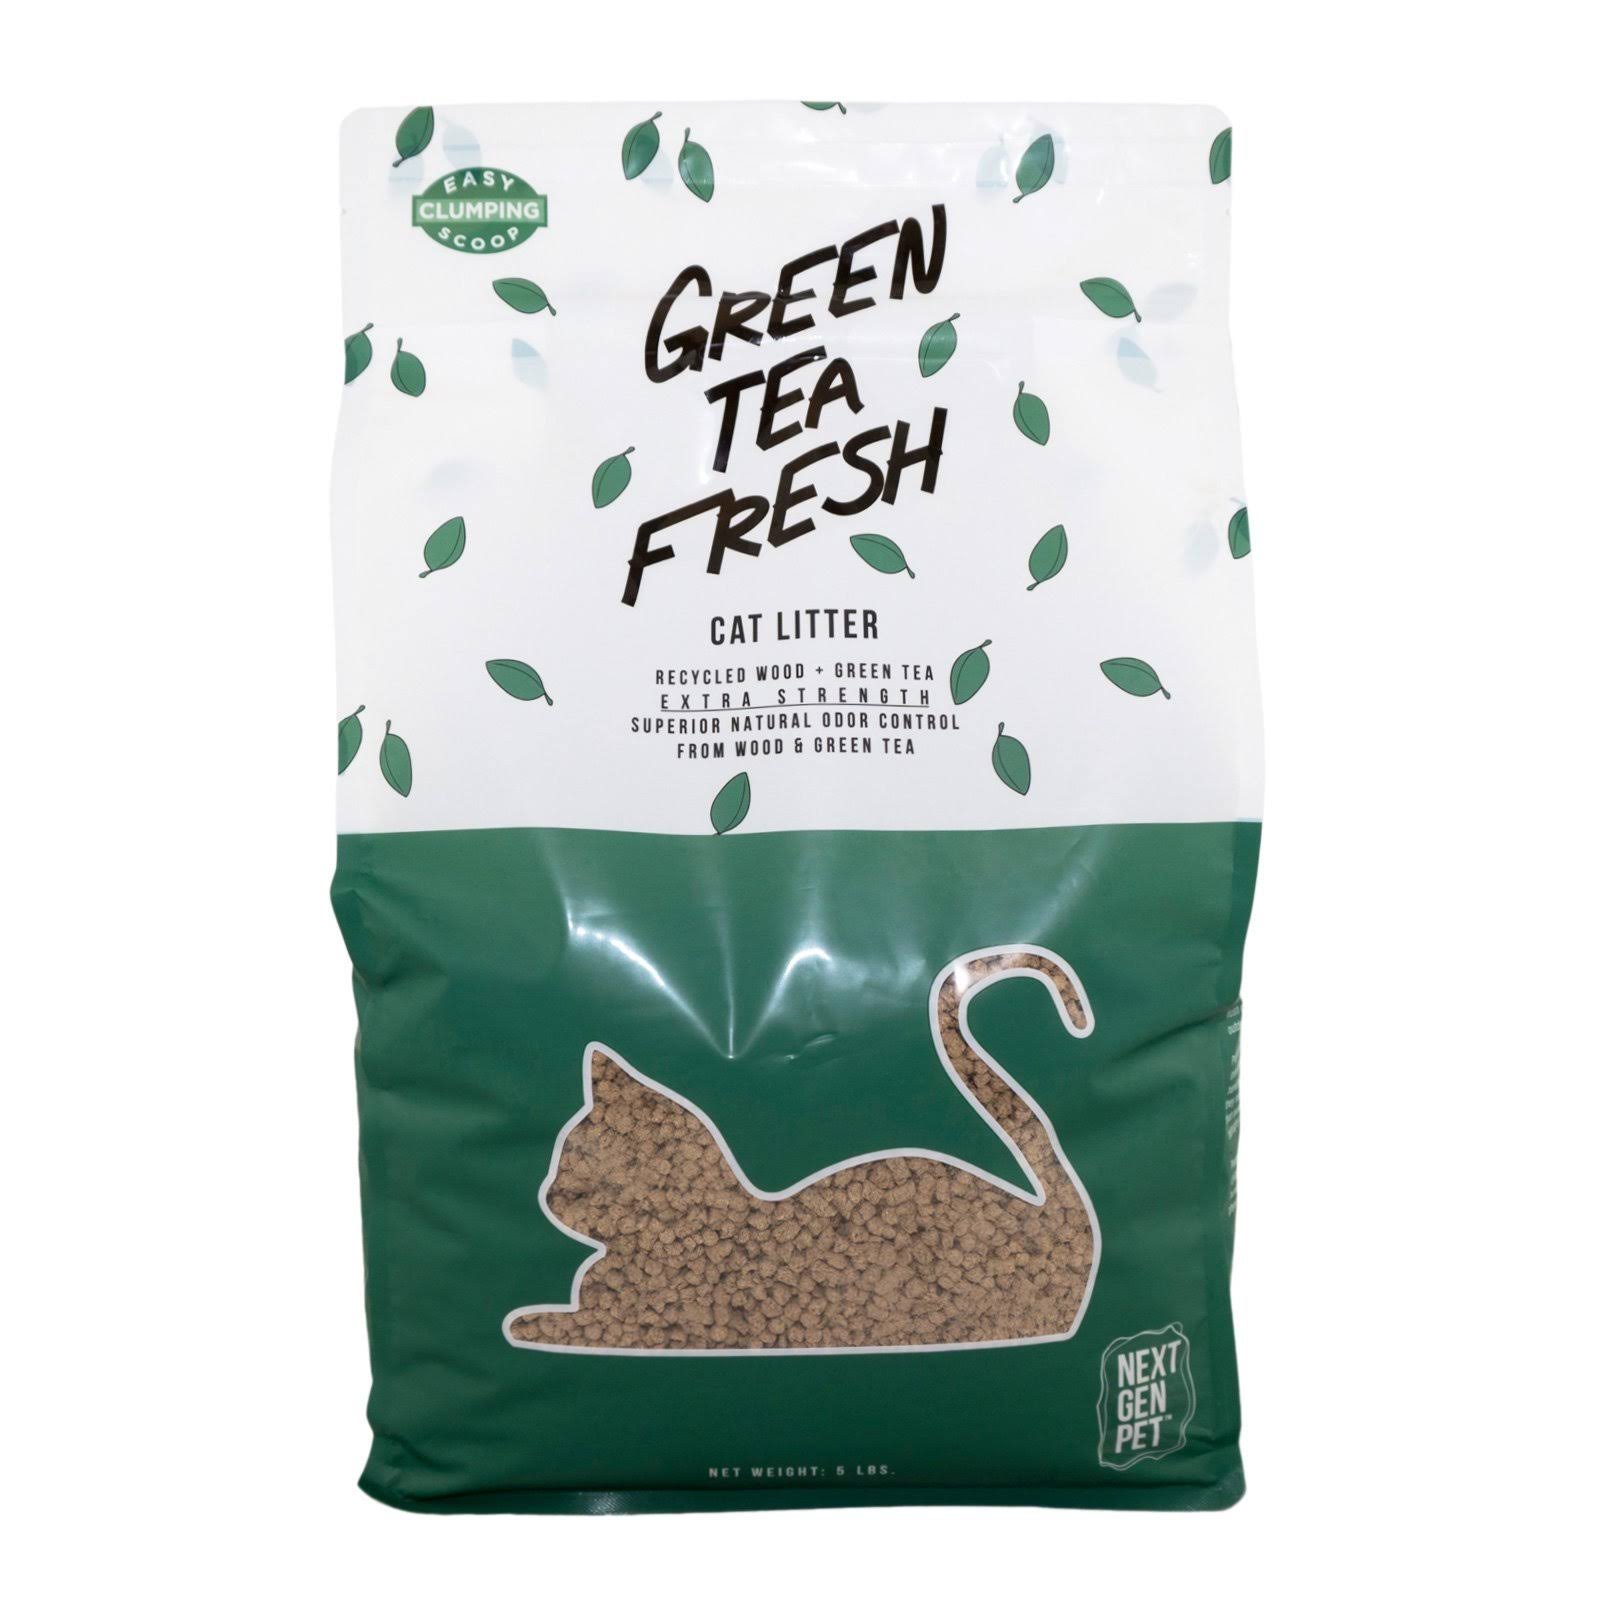 Next Gen Pet Green Tea Leaves Clumping Cat Litter